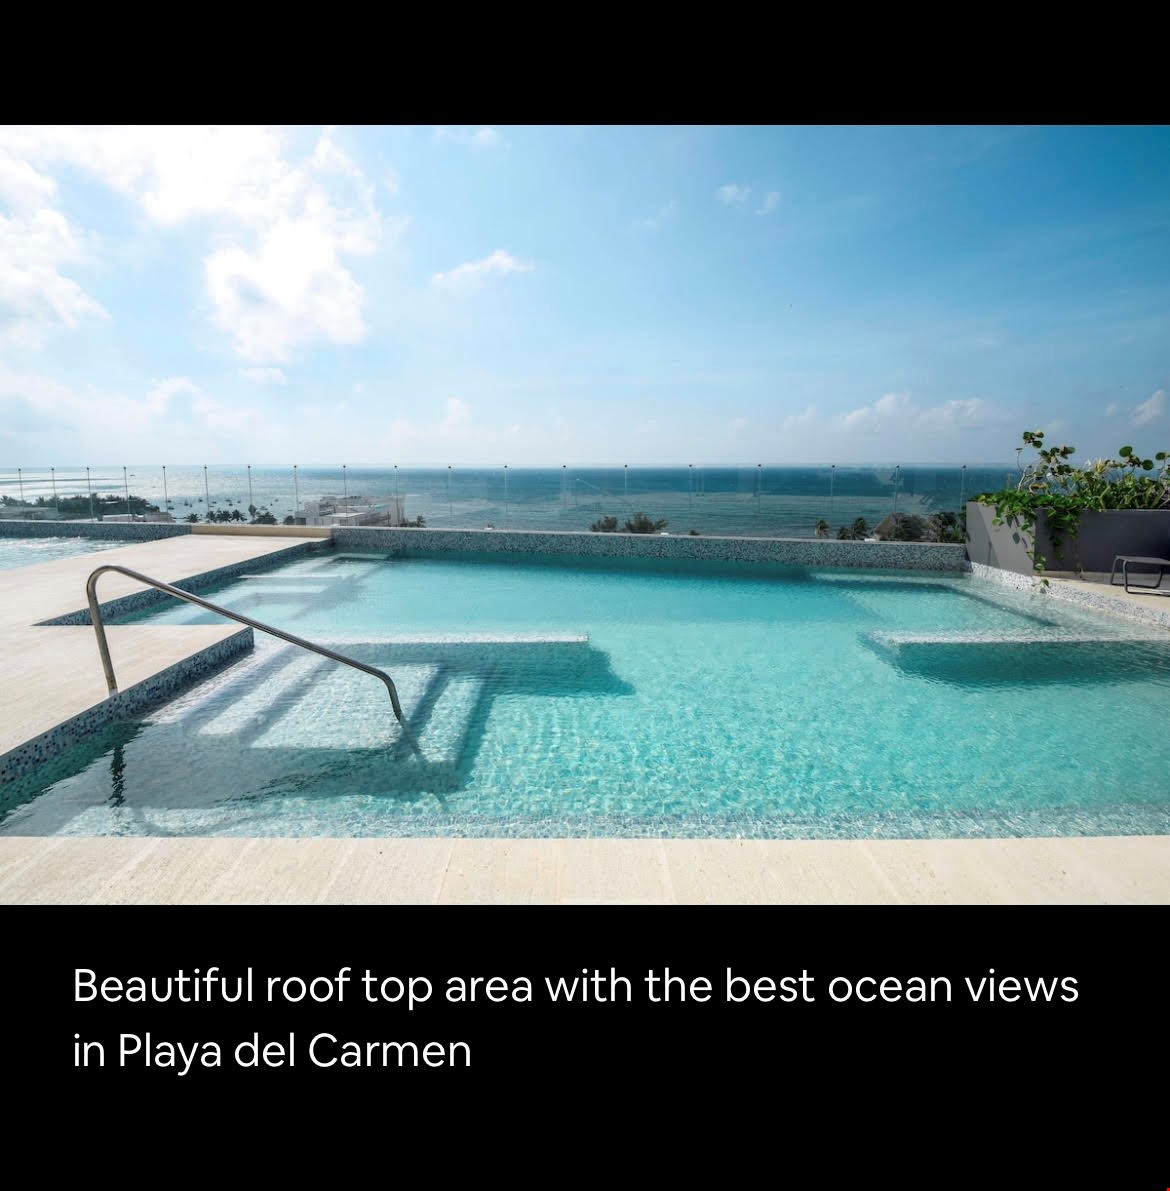 Hotel Playa Del Carmen Mexico nomad remote 0bf3c555-4b95-447a-a748-9bddc6ca8135_1.jpg